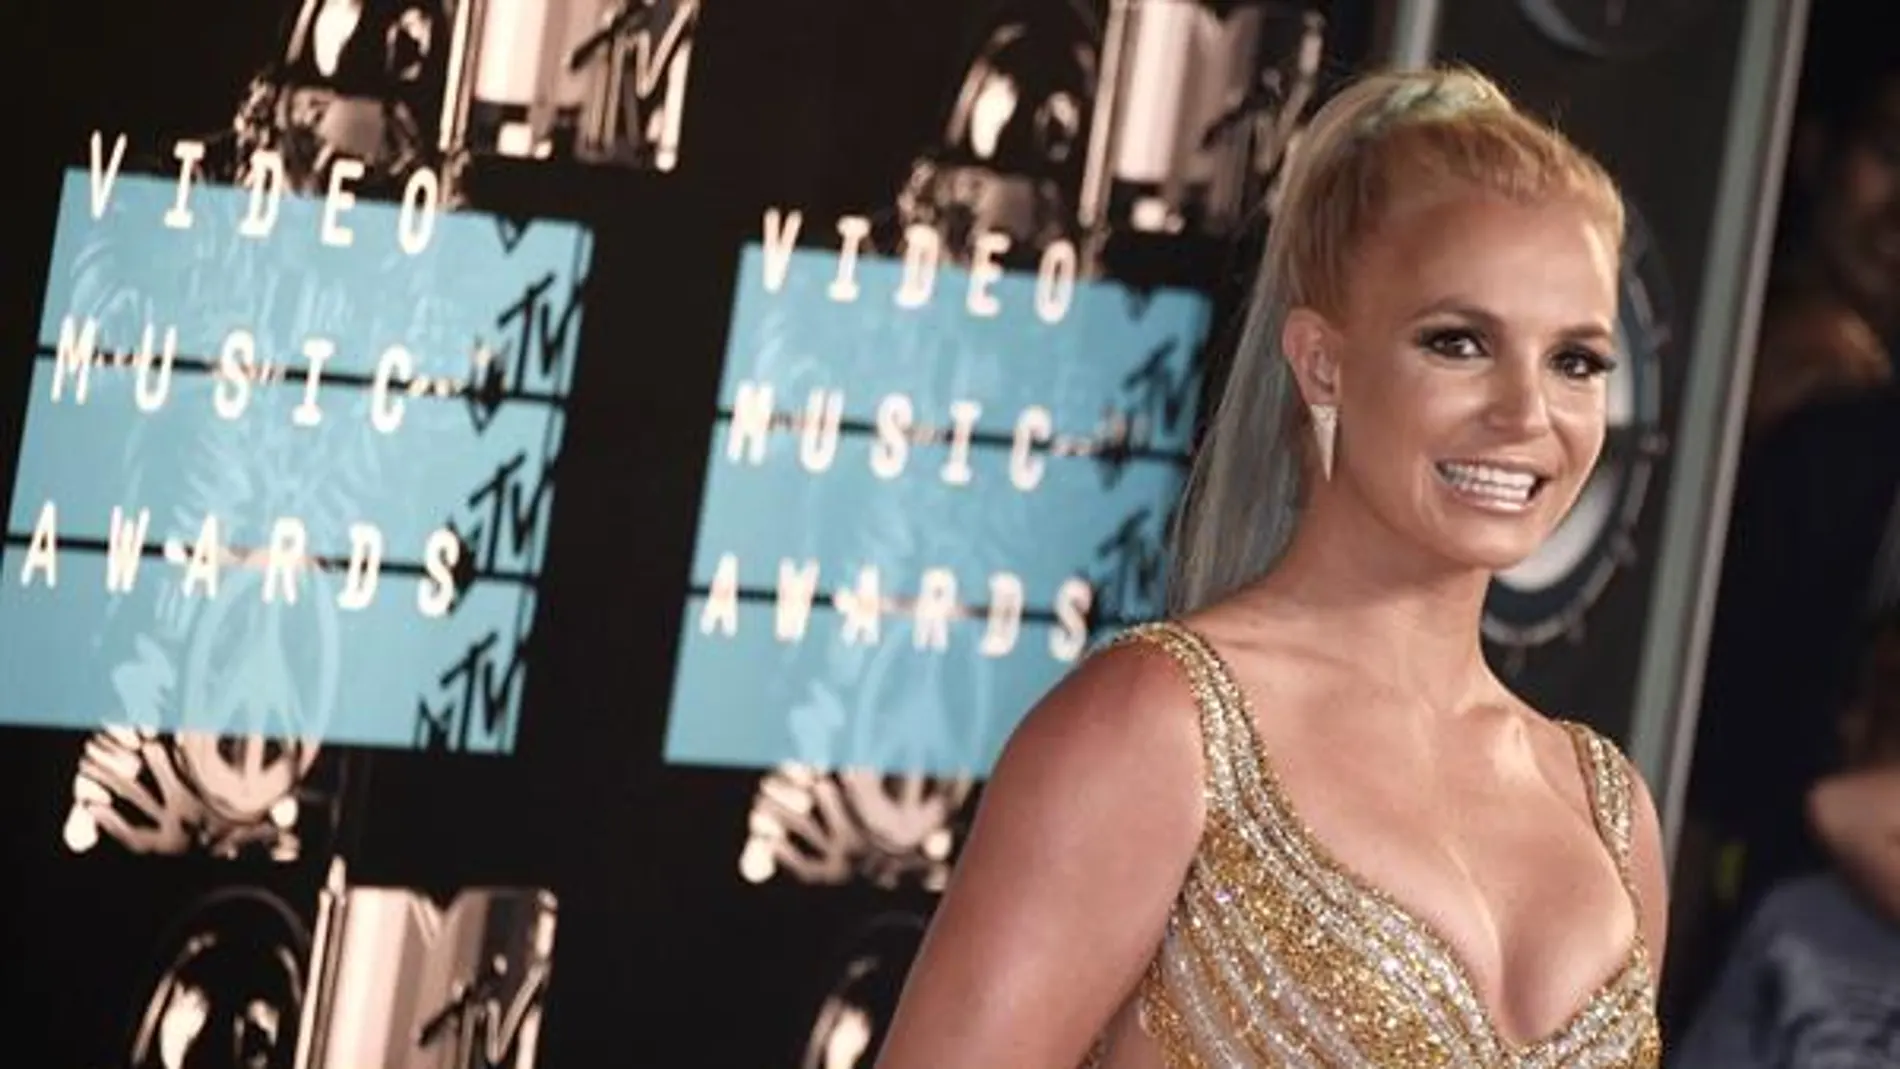 Britney Spears quiere finalizar la tutela legal "abusiva" que su padre ejerce sobre ella: "Quiero mi vida de nuevo"